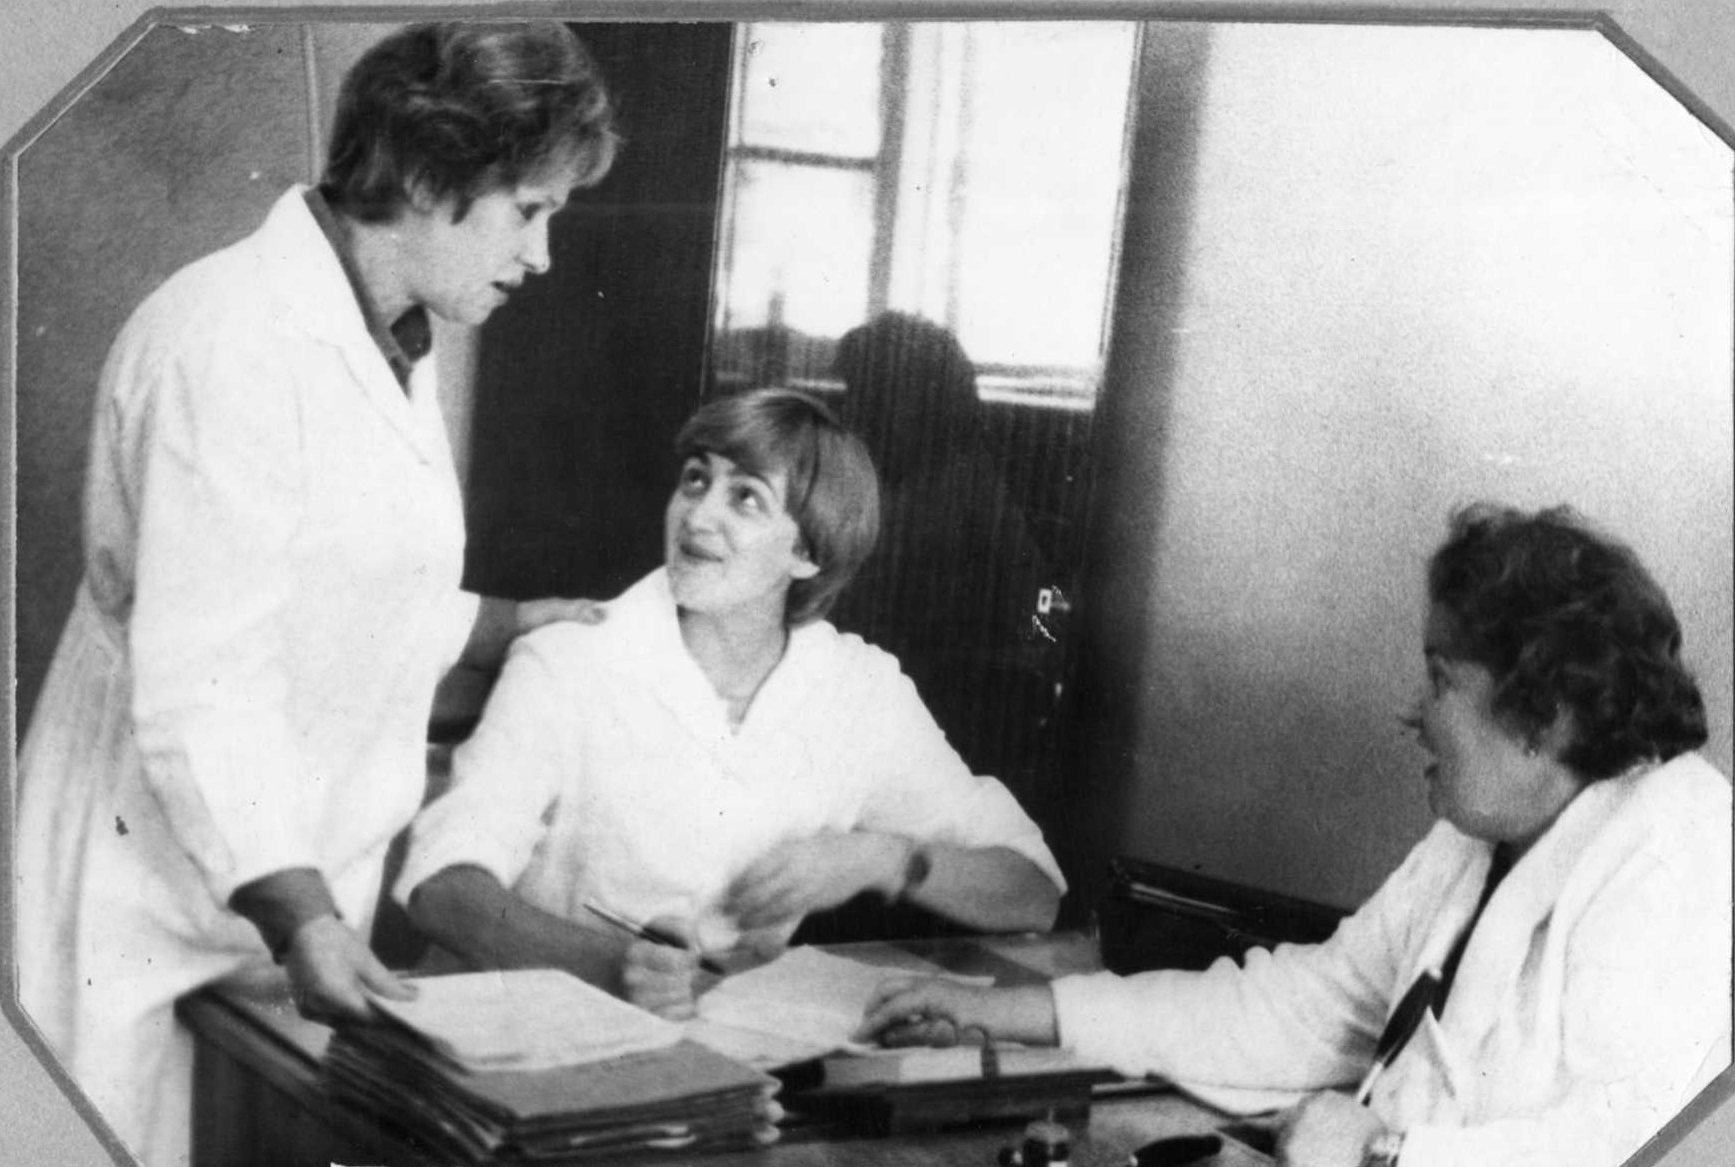 Заведующая отделением Васильева Л. И., врач-психиатр Сивак Т. А., врач-невропатолог Спиридонова Е. Н.(слева направо) обсуждают тактику лечения пациента, 1975 год.